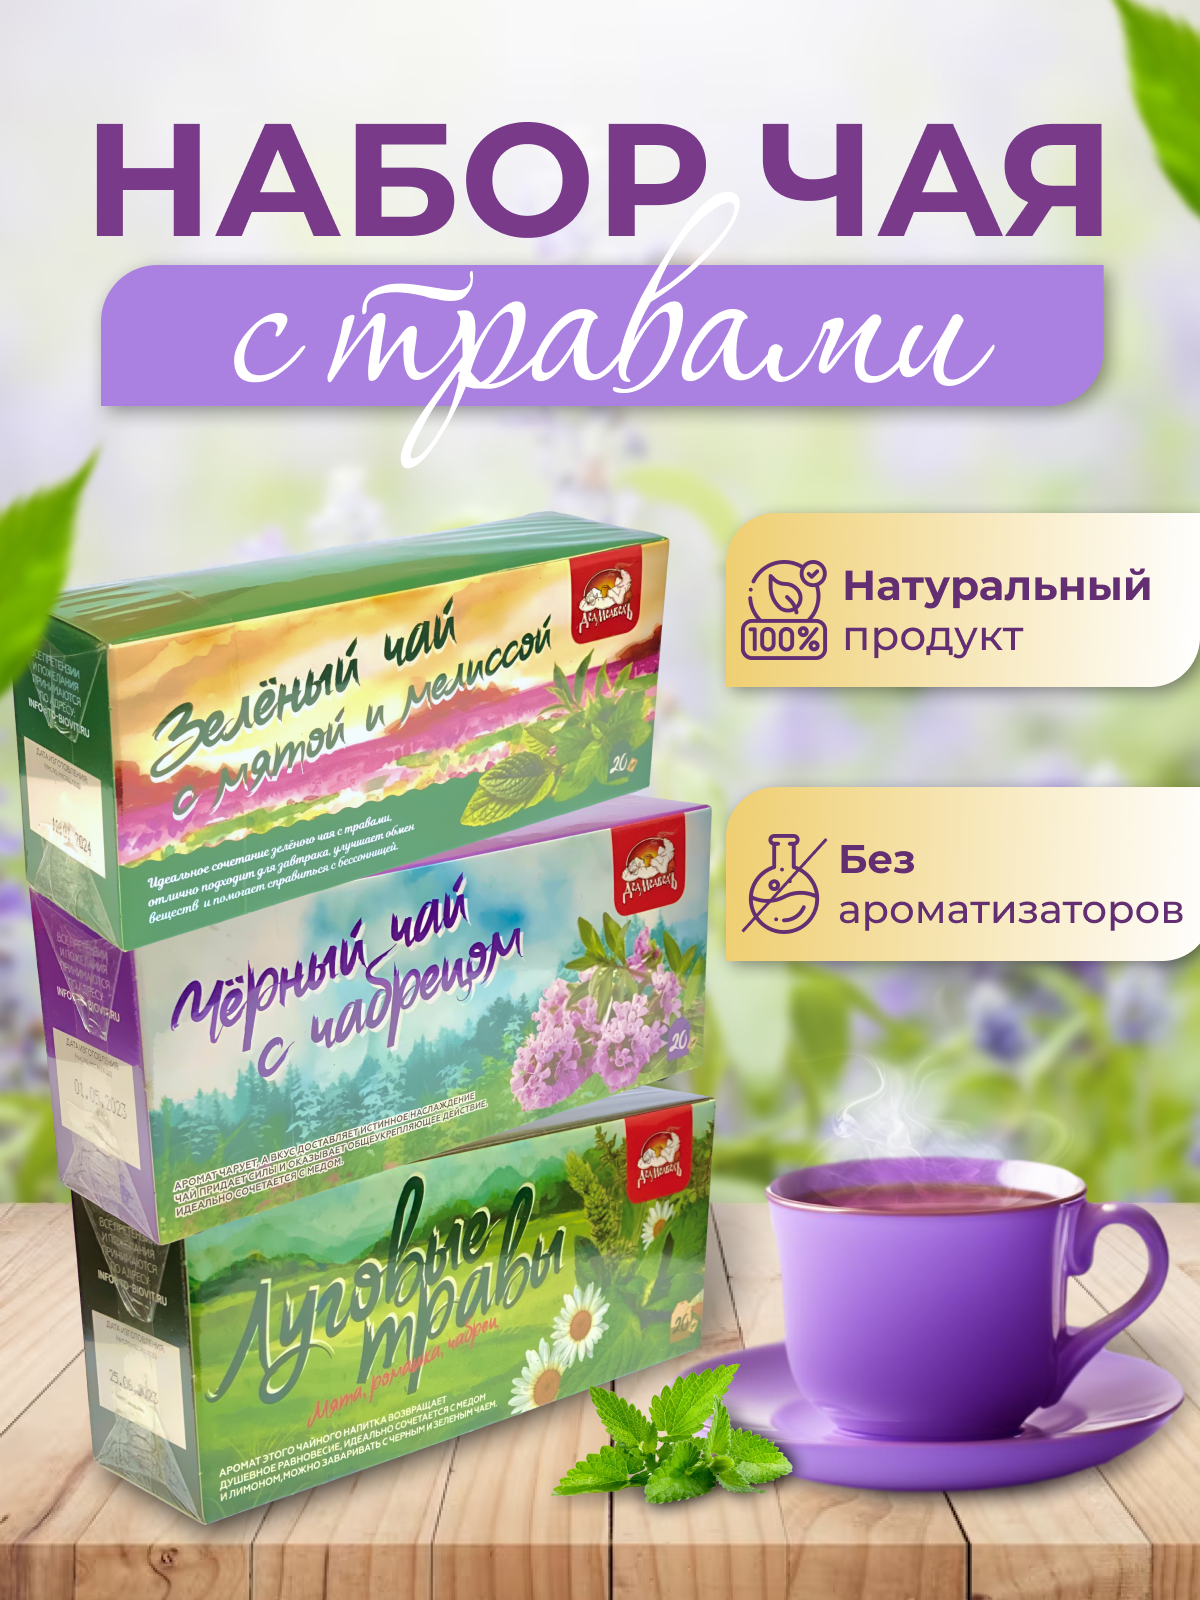 Набор чая "Травяной №1" 3 упаковки по 20 пакетиков